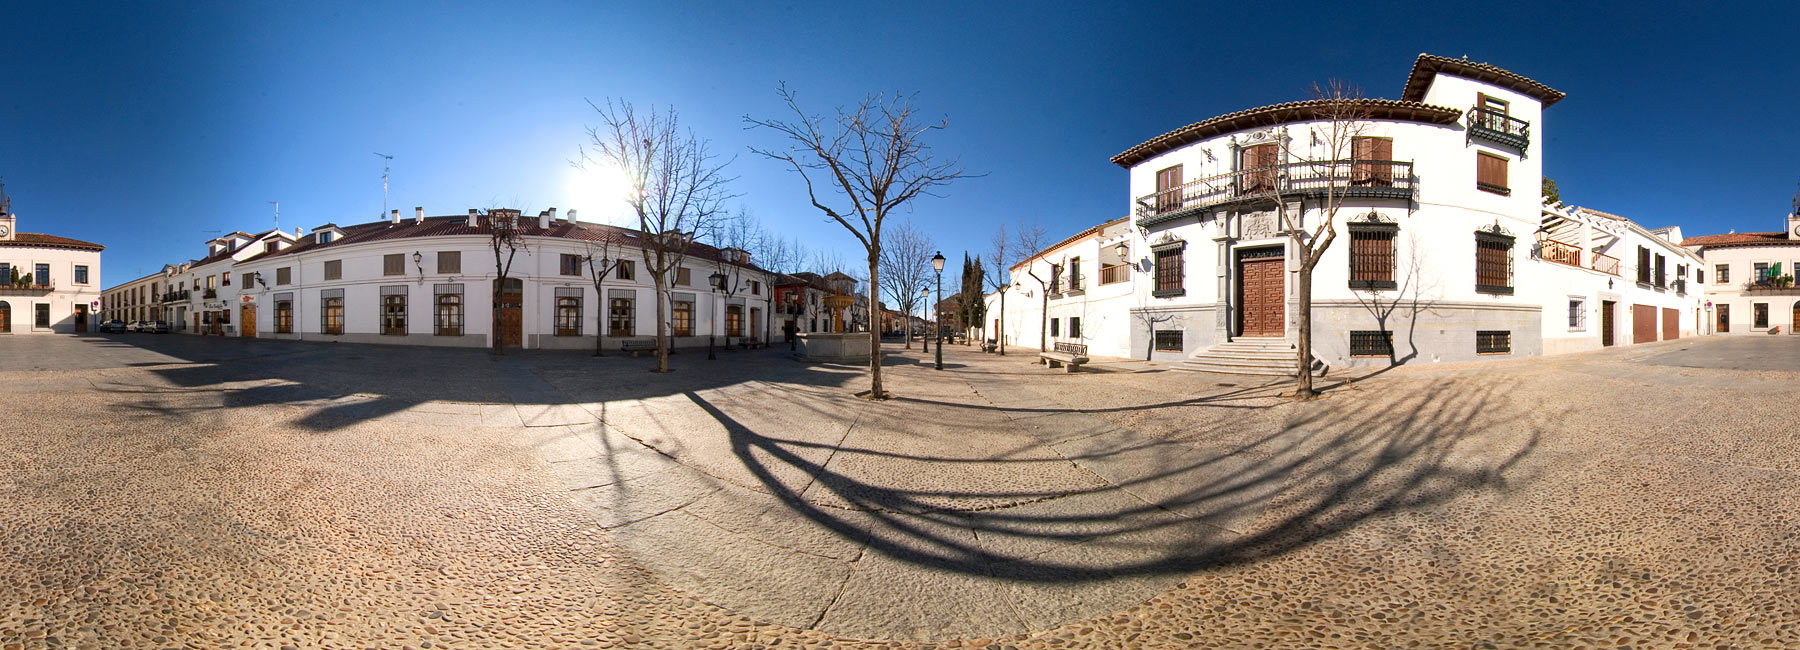 Visita virtual de la Plaza del Ayuntamiento